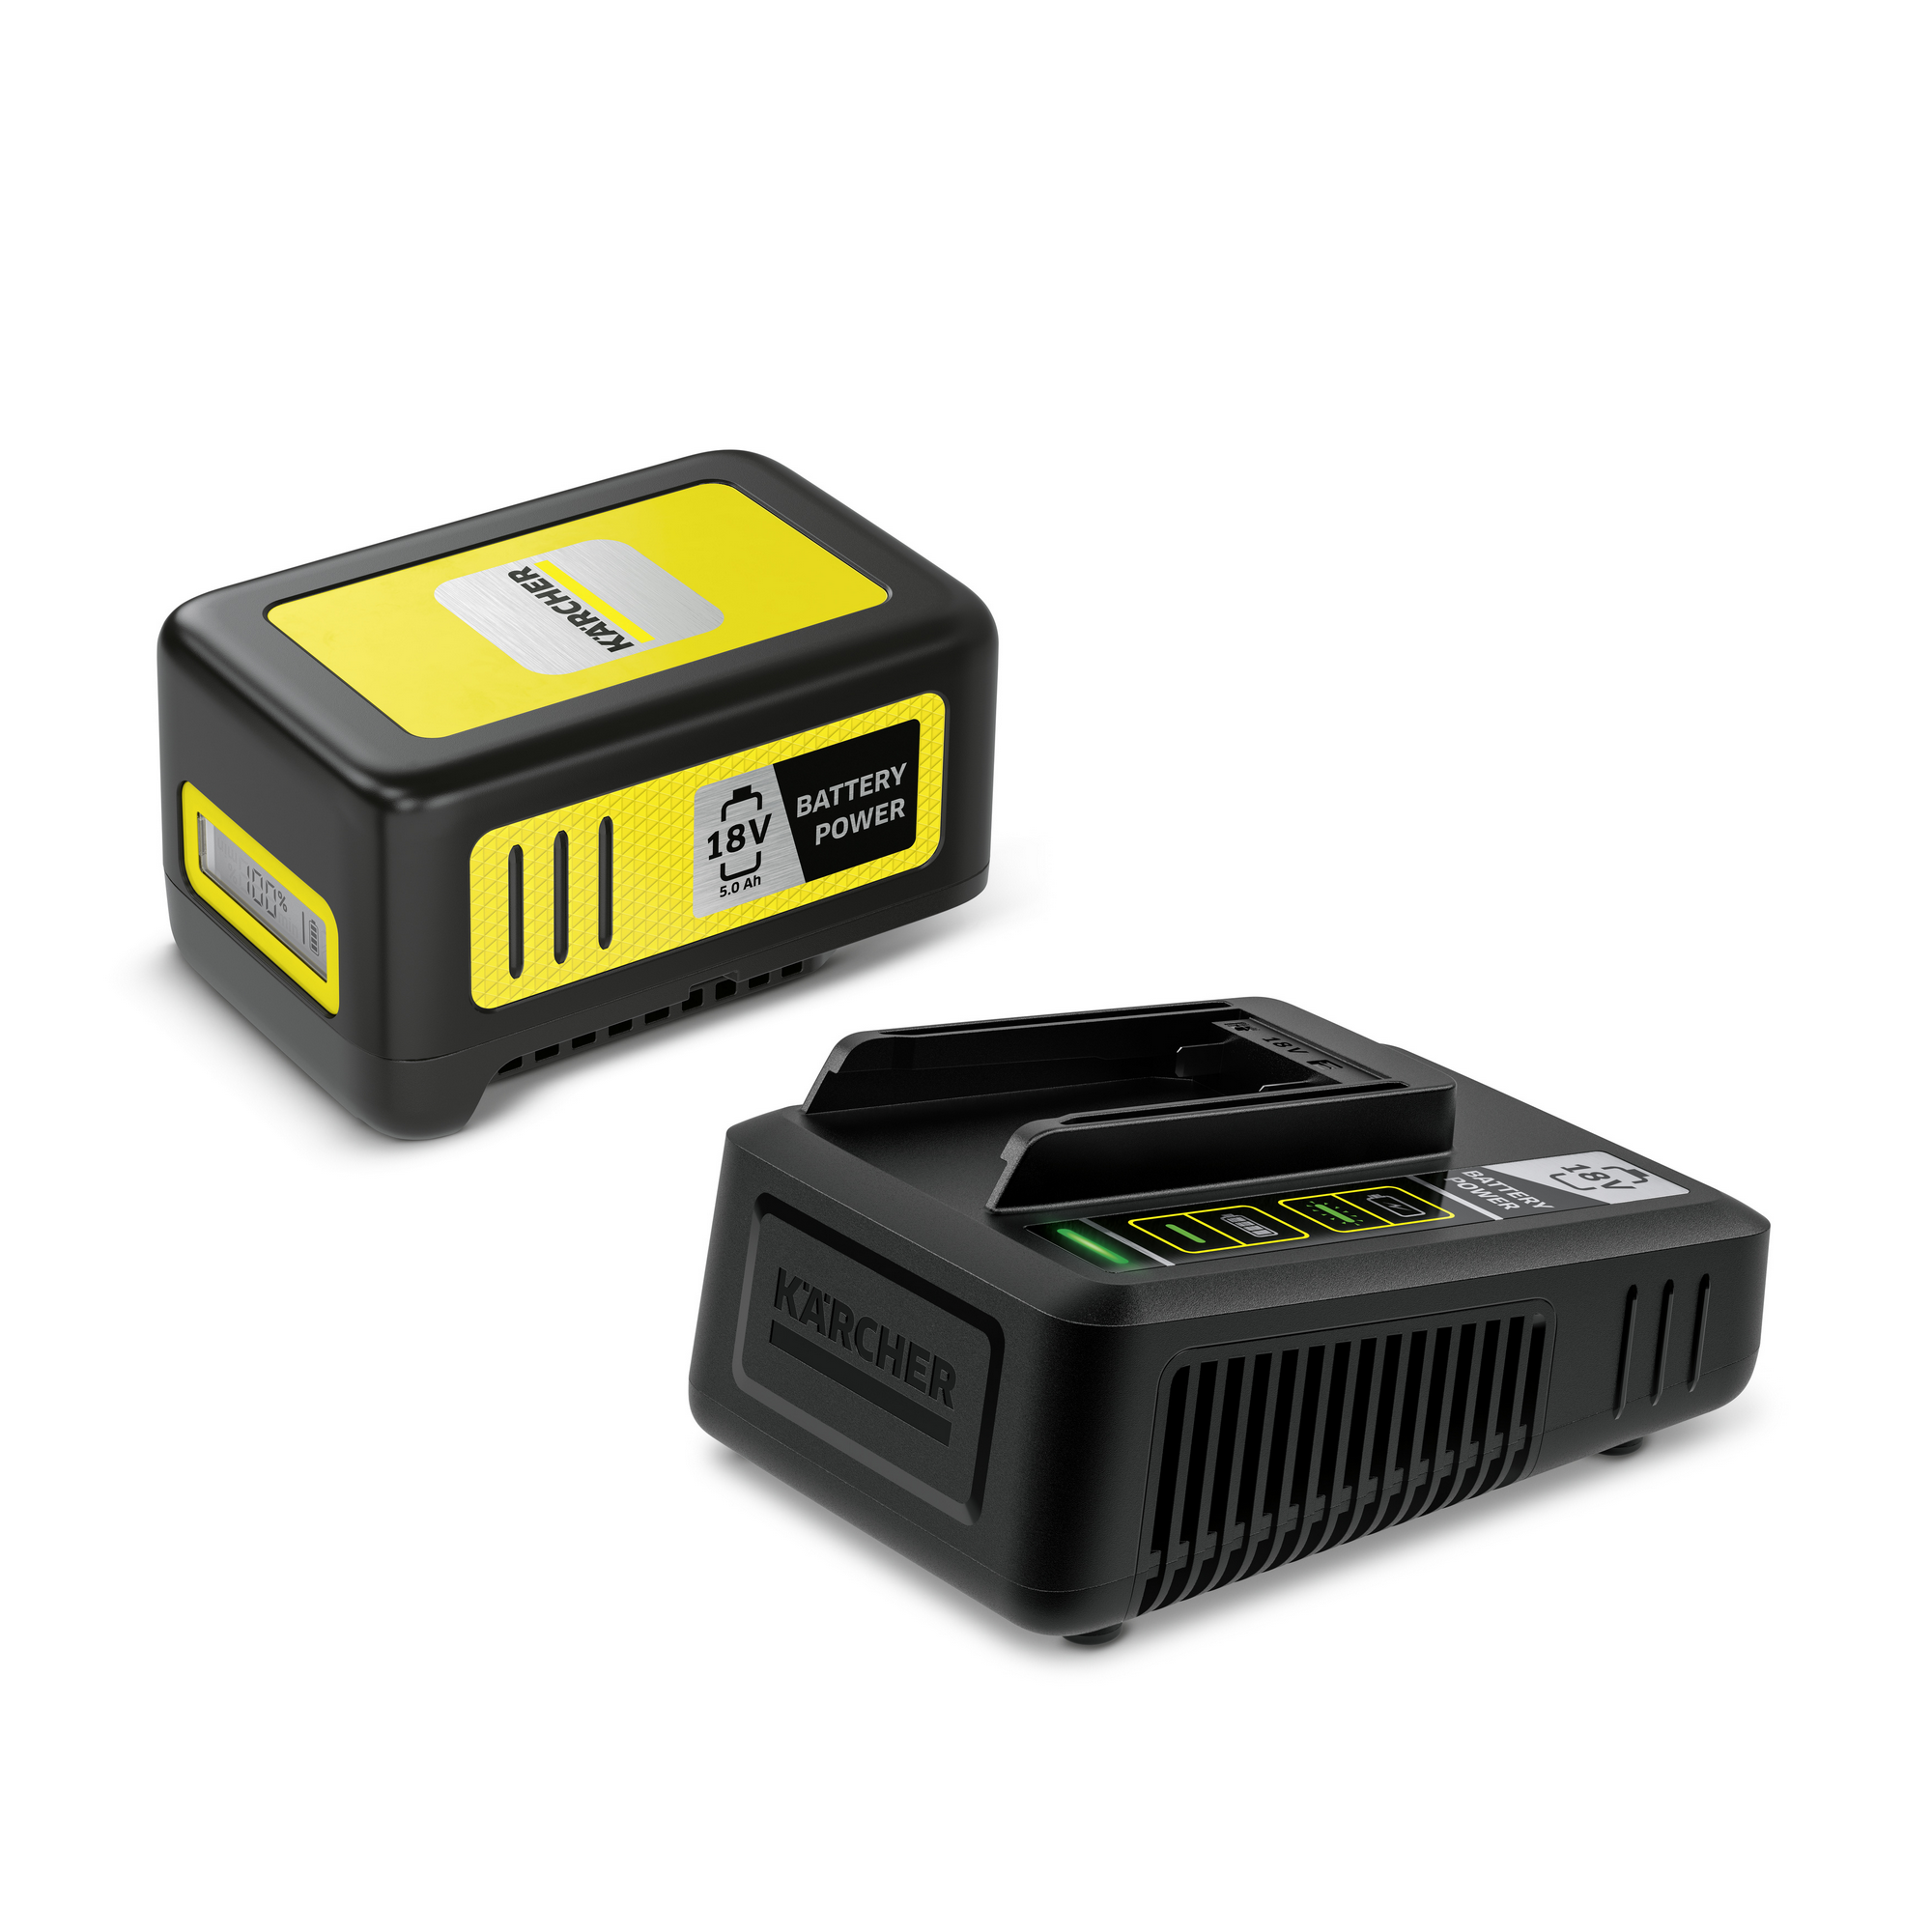 Starter-Kit 'Battery Power 18/50' Wechselakku mit Schnellladegerät, 18 V 5,0 Ah + product picture